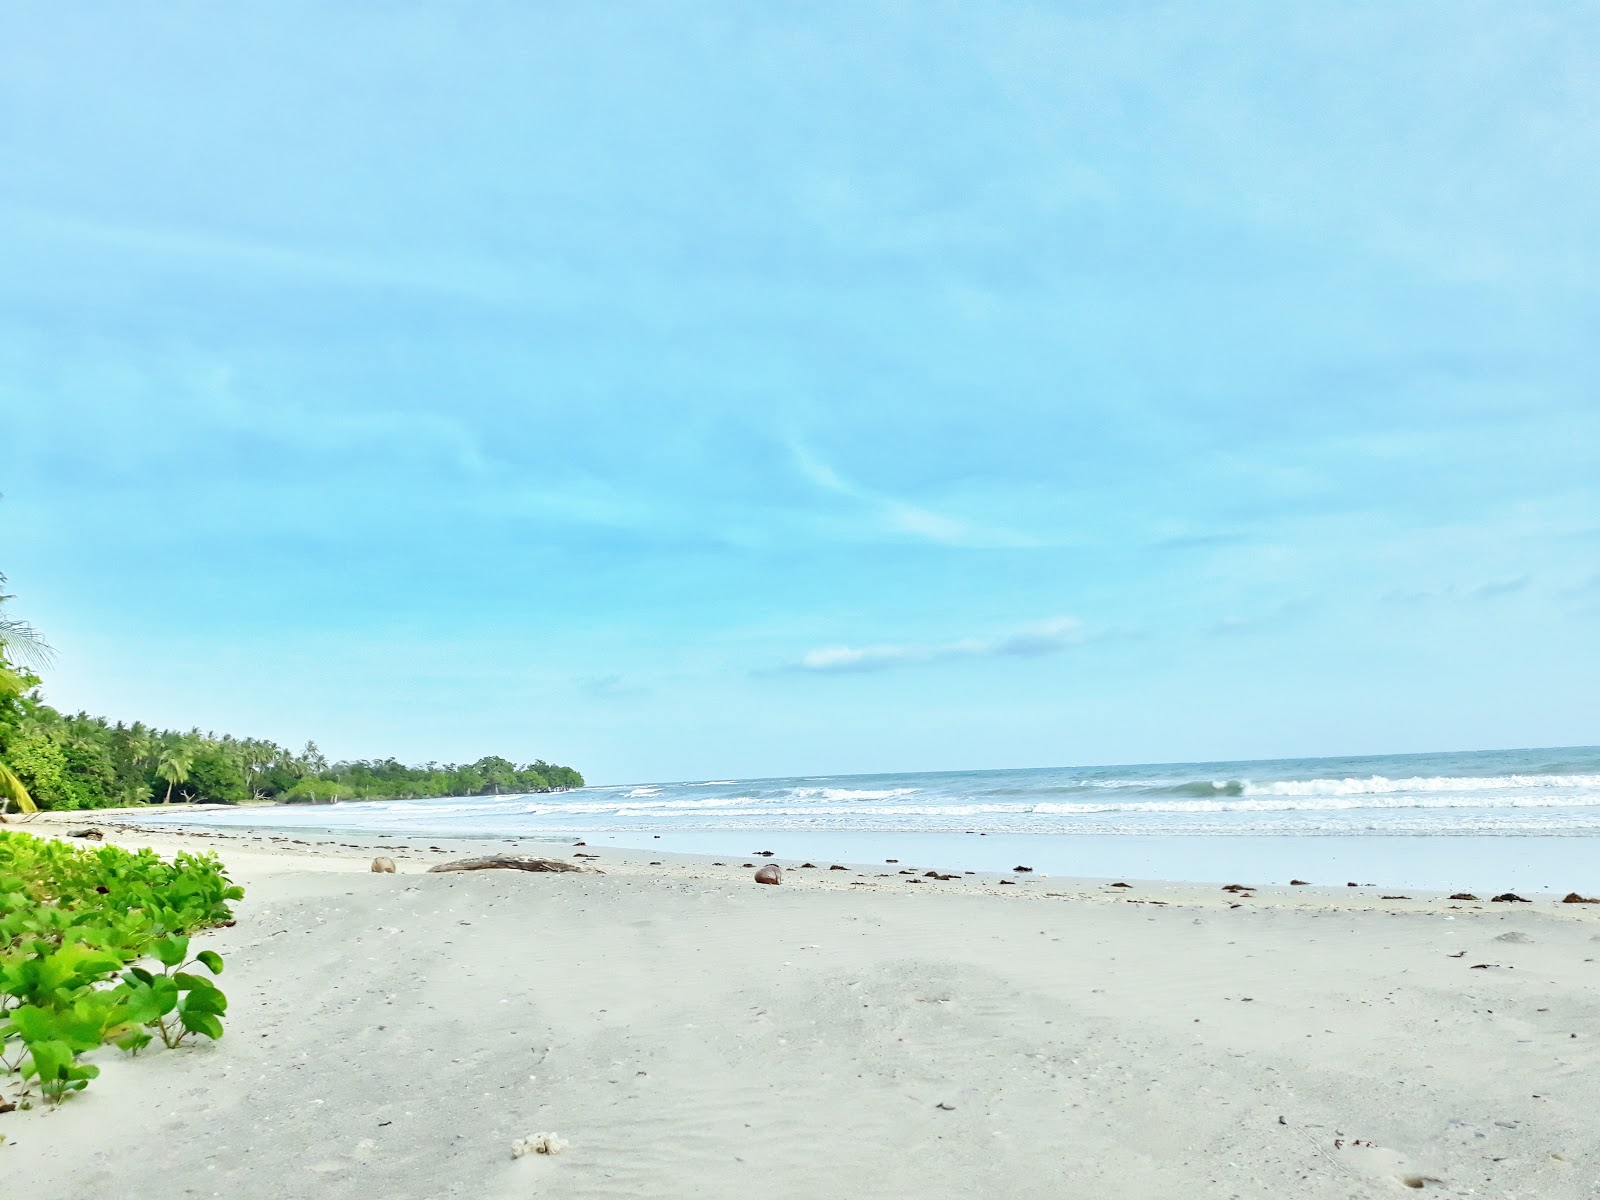 Zdjęcie Langogan Beach - popularne miejsce wśród znawców relaksu